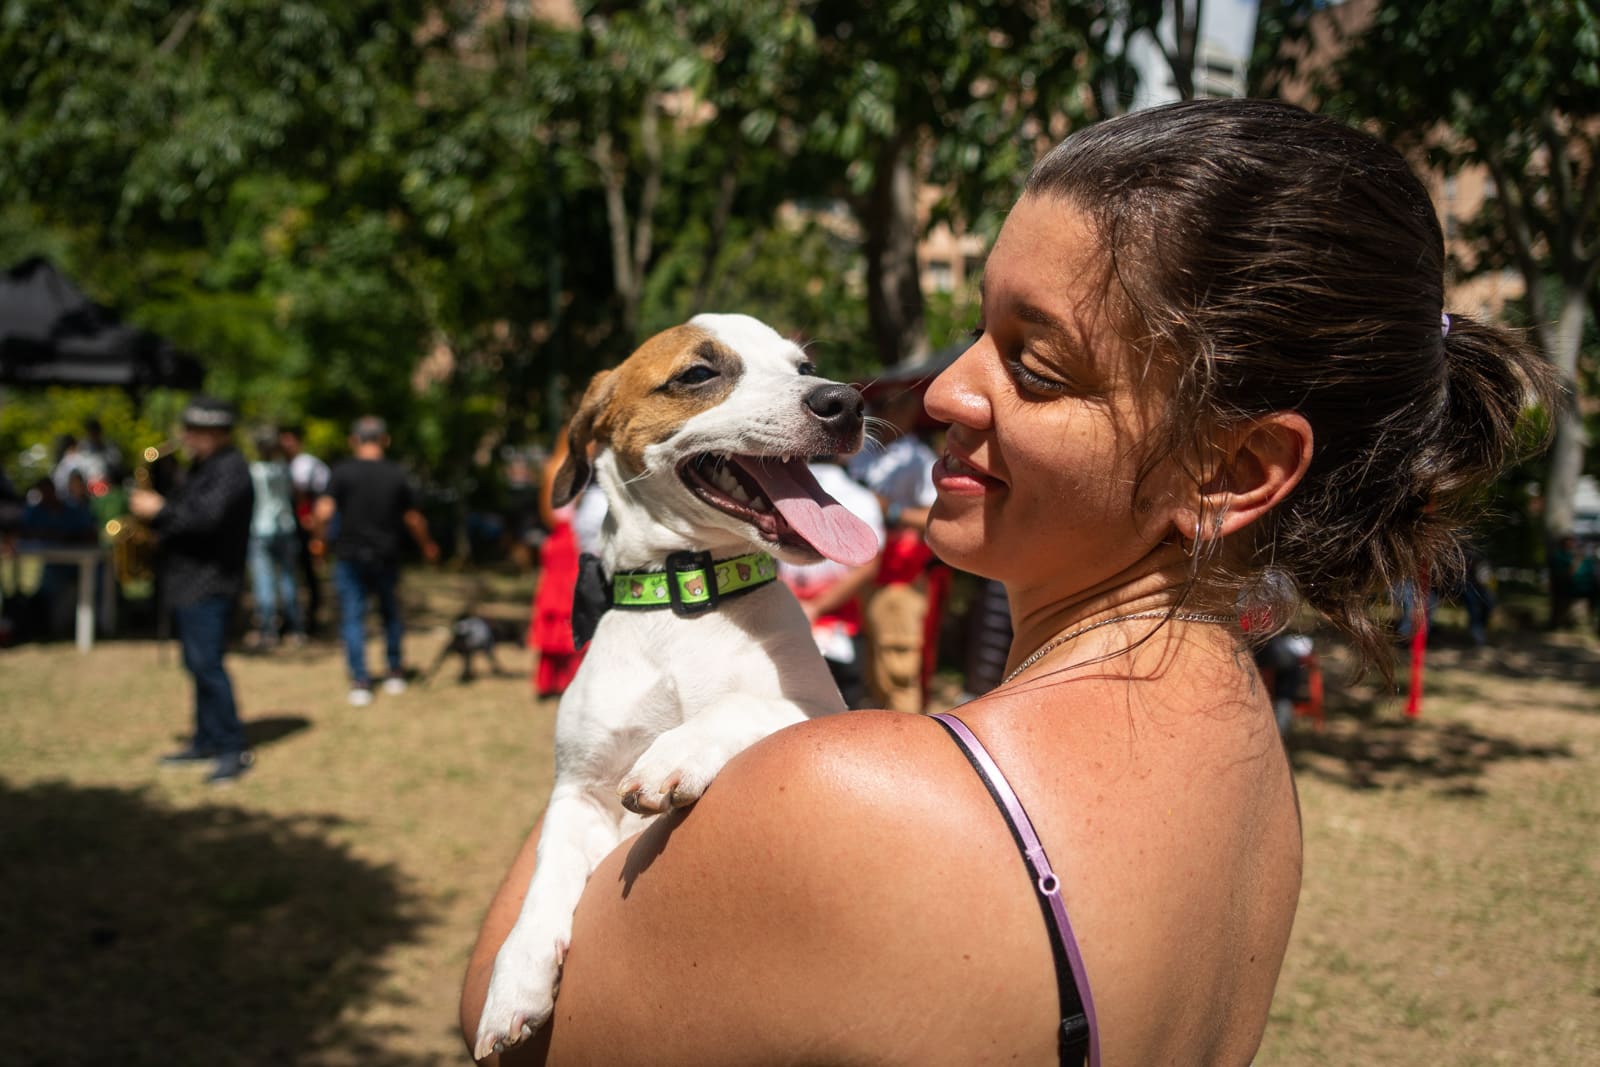 Yo adopto jornada de adopción de perros y gatos en Caracas Refugio El Valle parque mascotas Vizcaya El Diario Jose Daniel Ramos